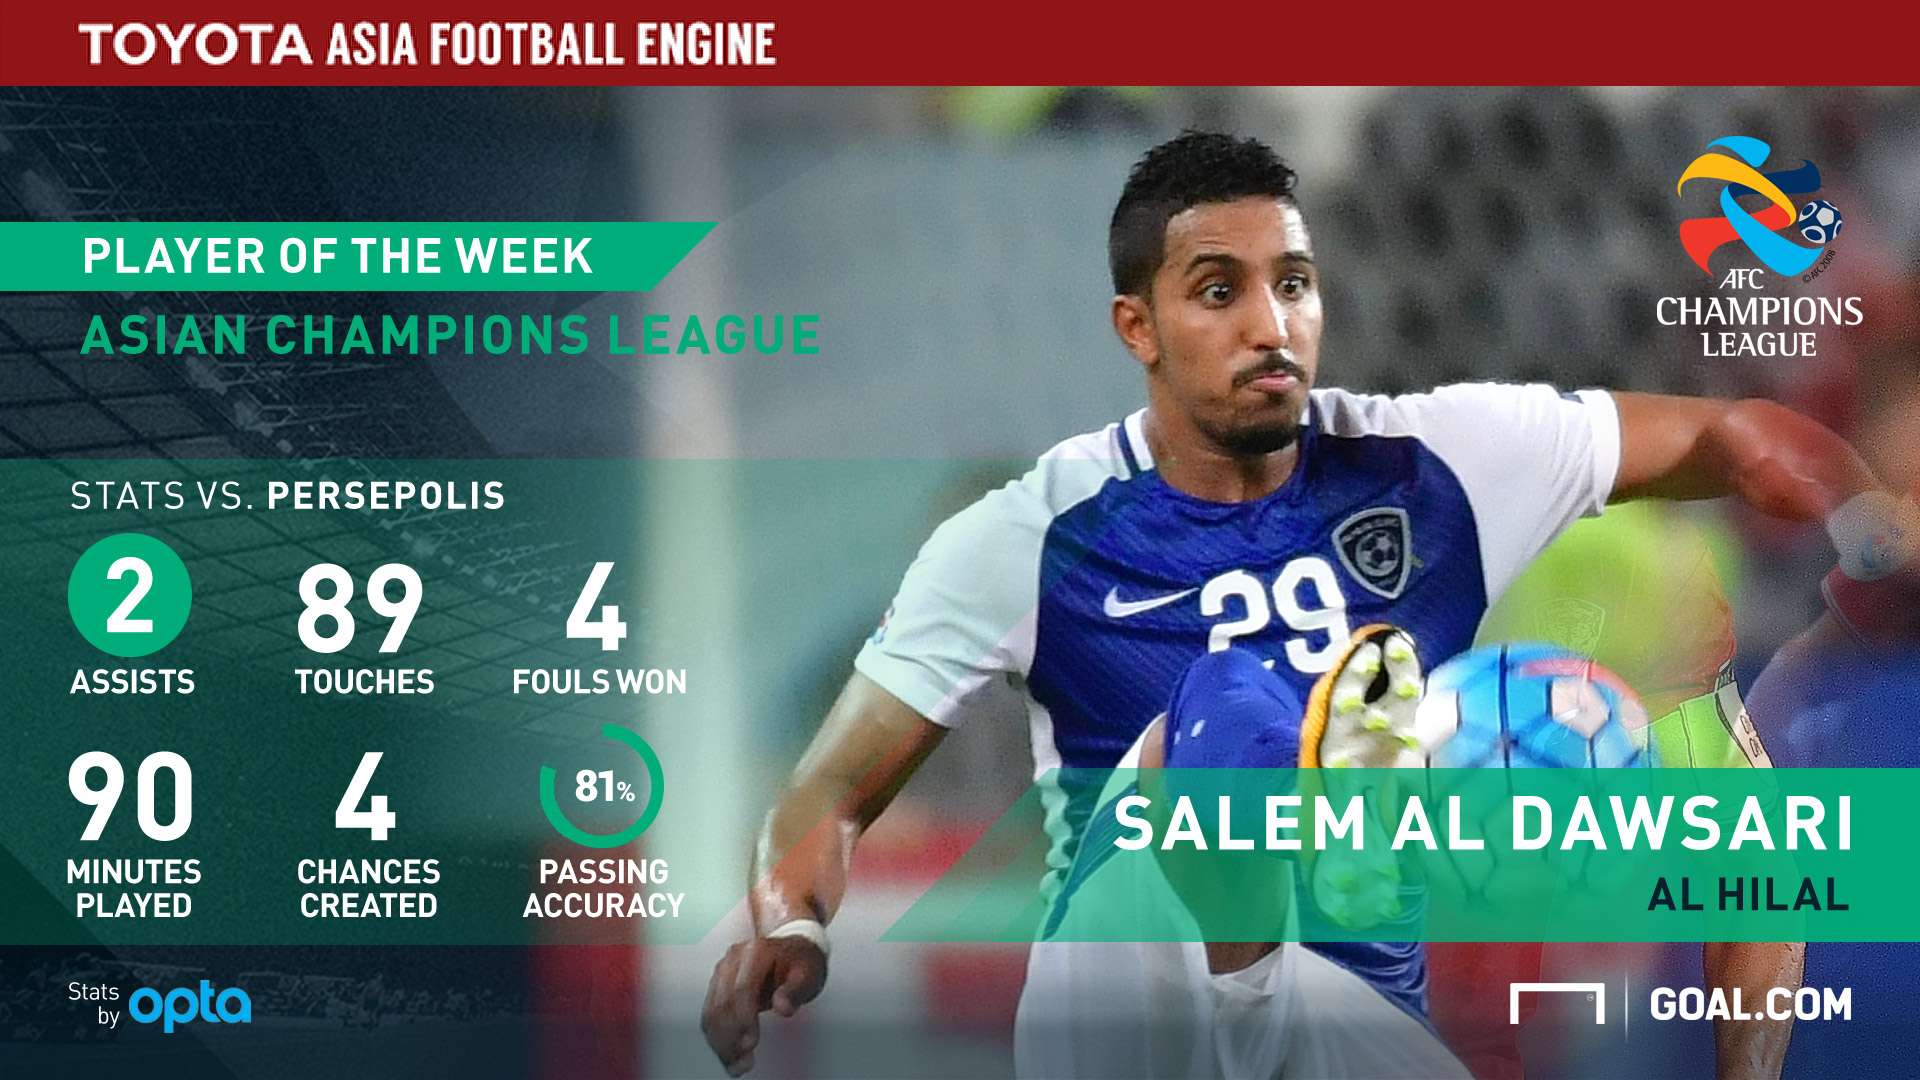 Salem Al Dawsari